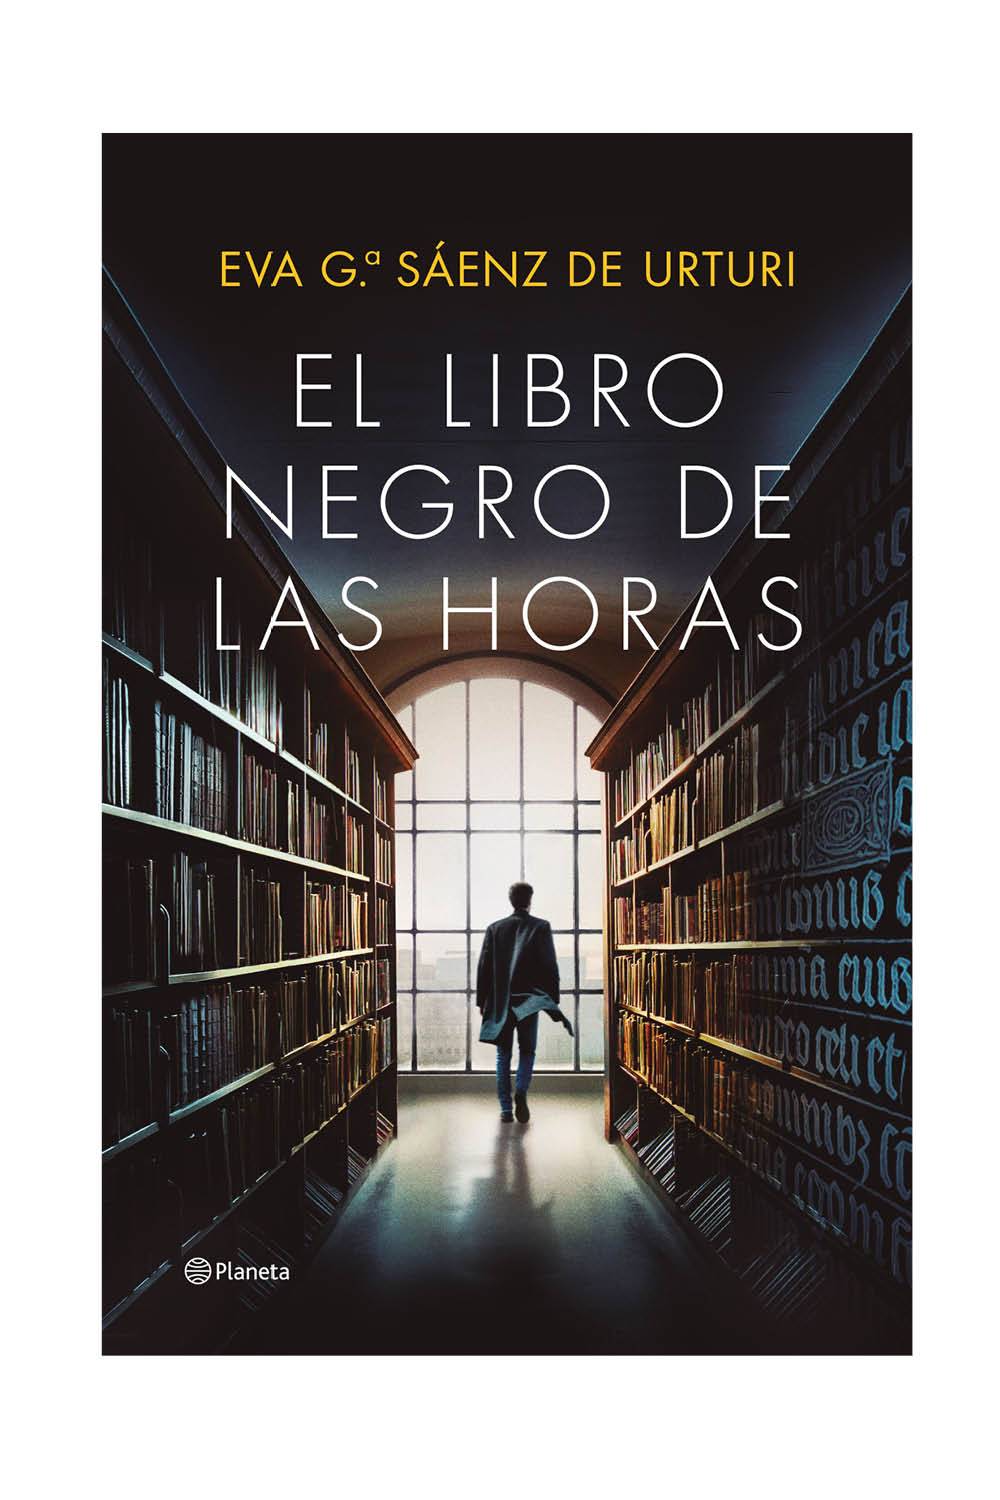 LIBROS RECOMENDADOS: El libro negro de las horas de Eva Gª Sáenz de Urturi